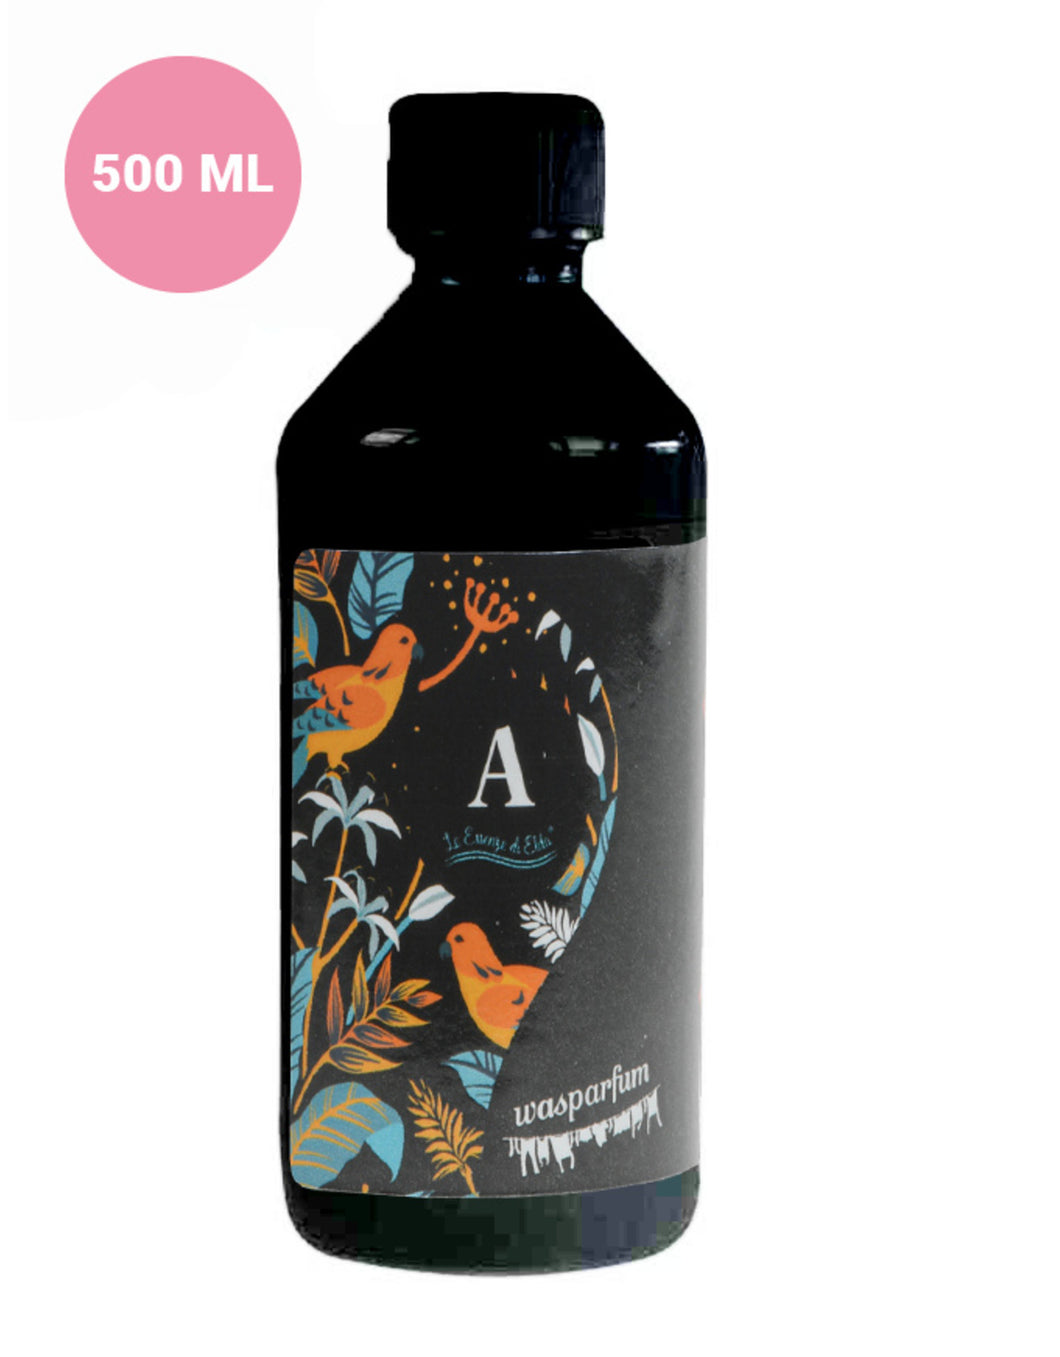 Wasparfum - ELDA A met Musk en Aromatic Herbs 500ml